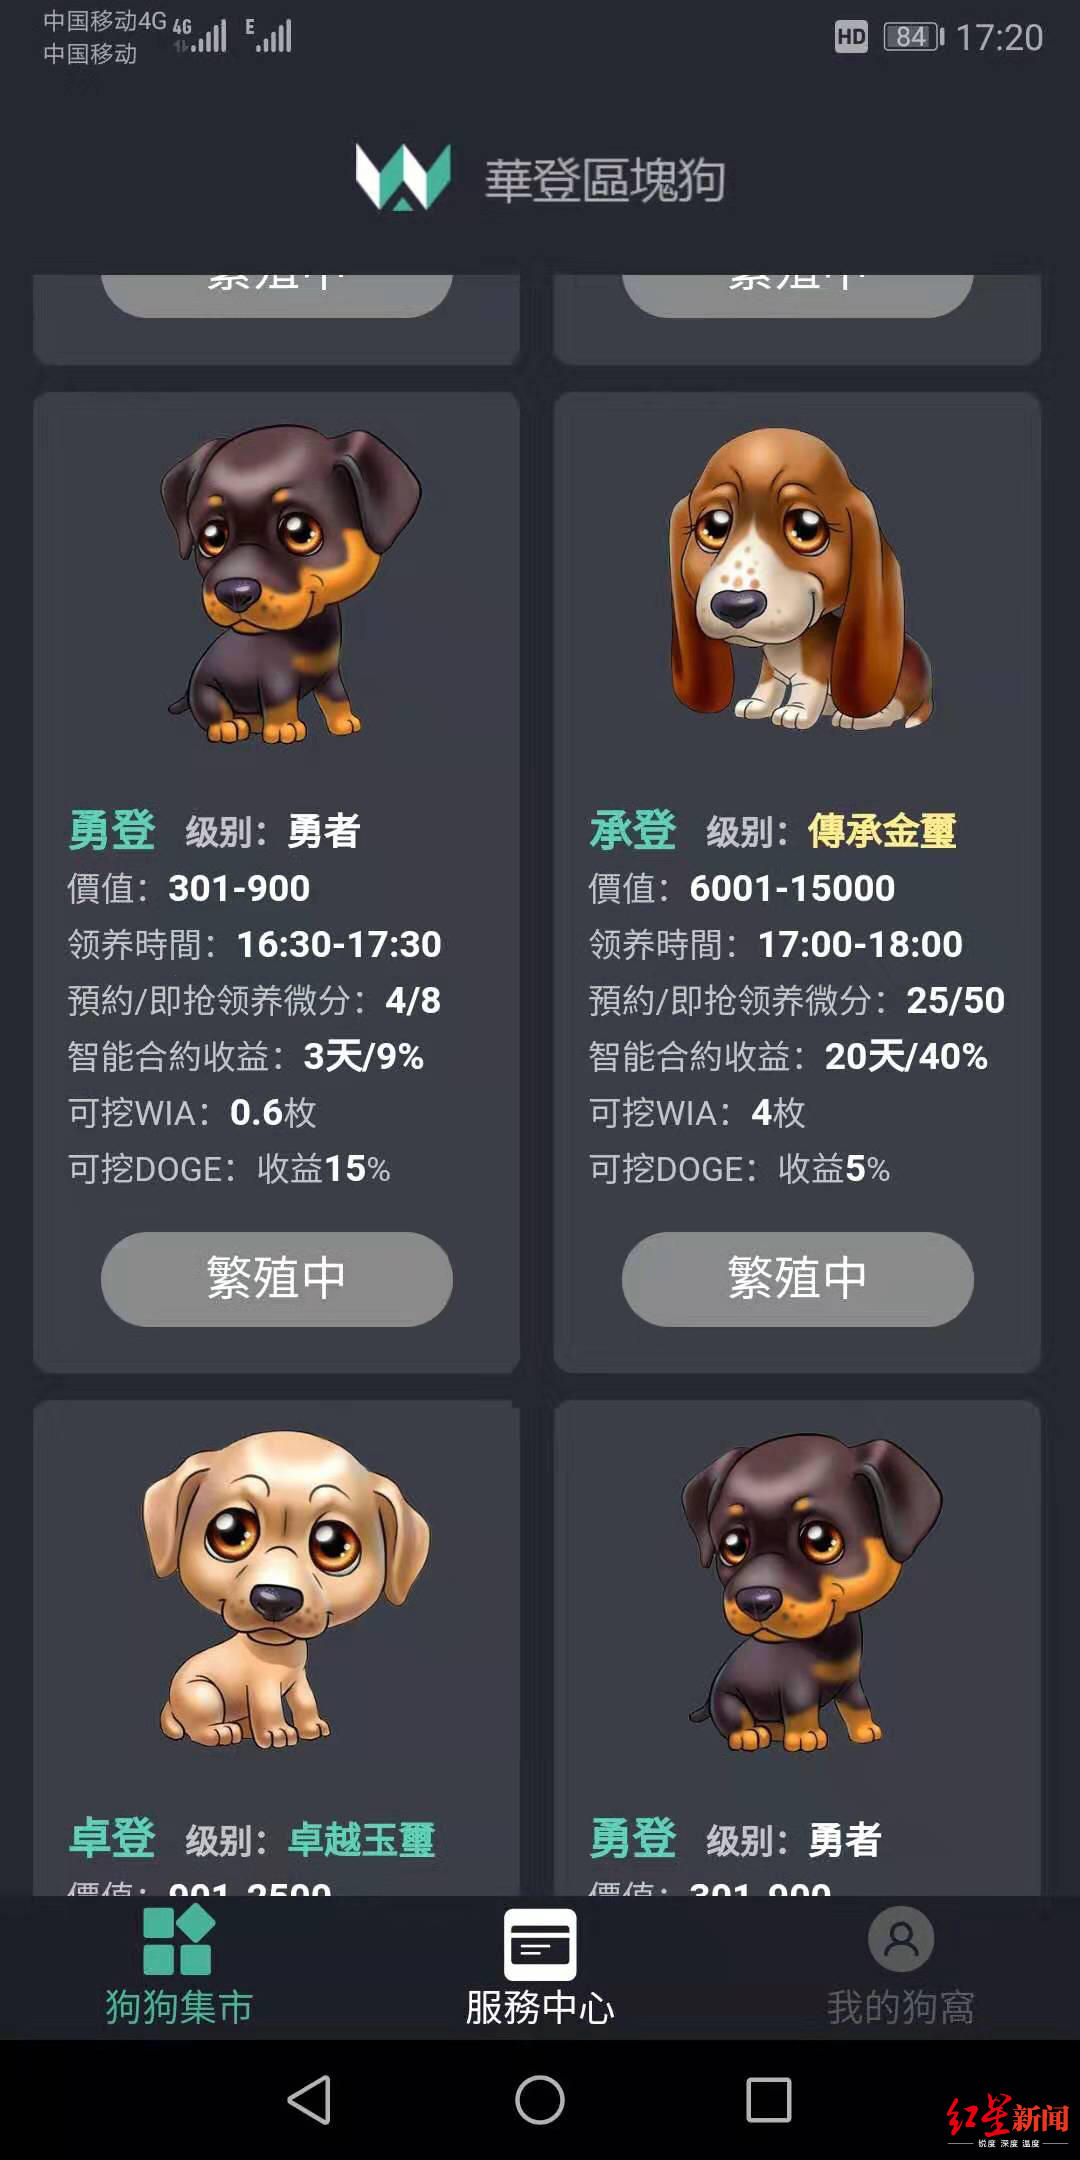 网上投钱疯狂“抢狗”400人玩虚拟宠物游戏称被骗300多万